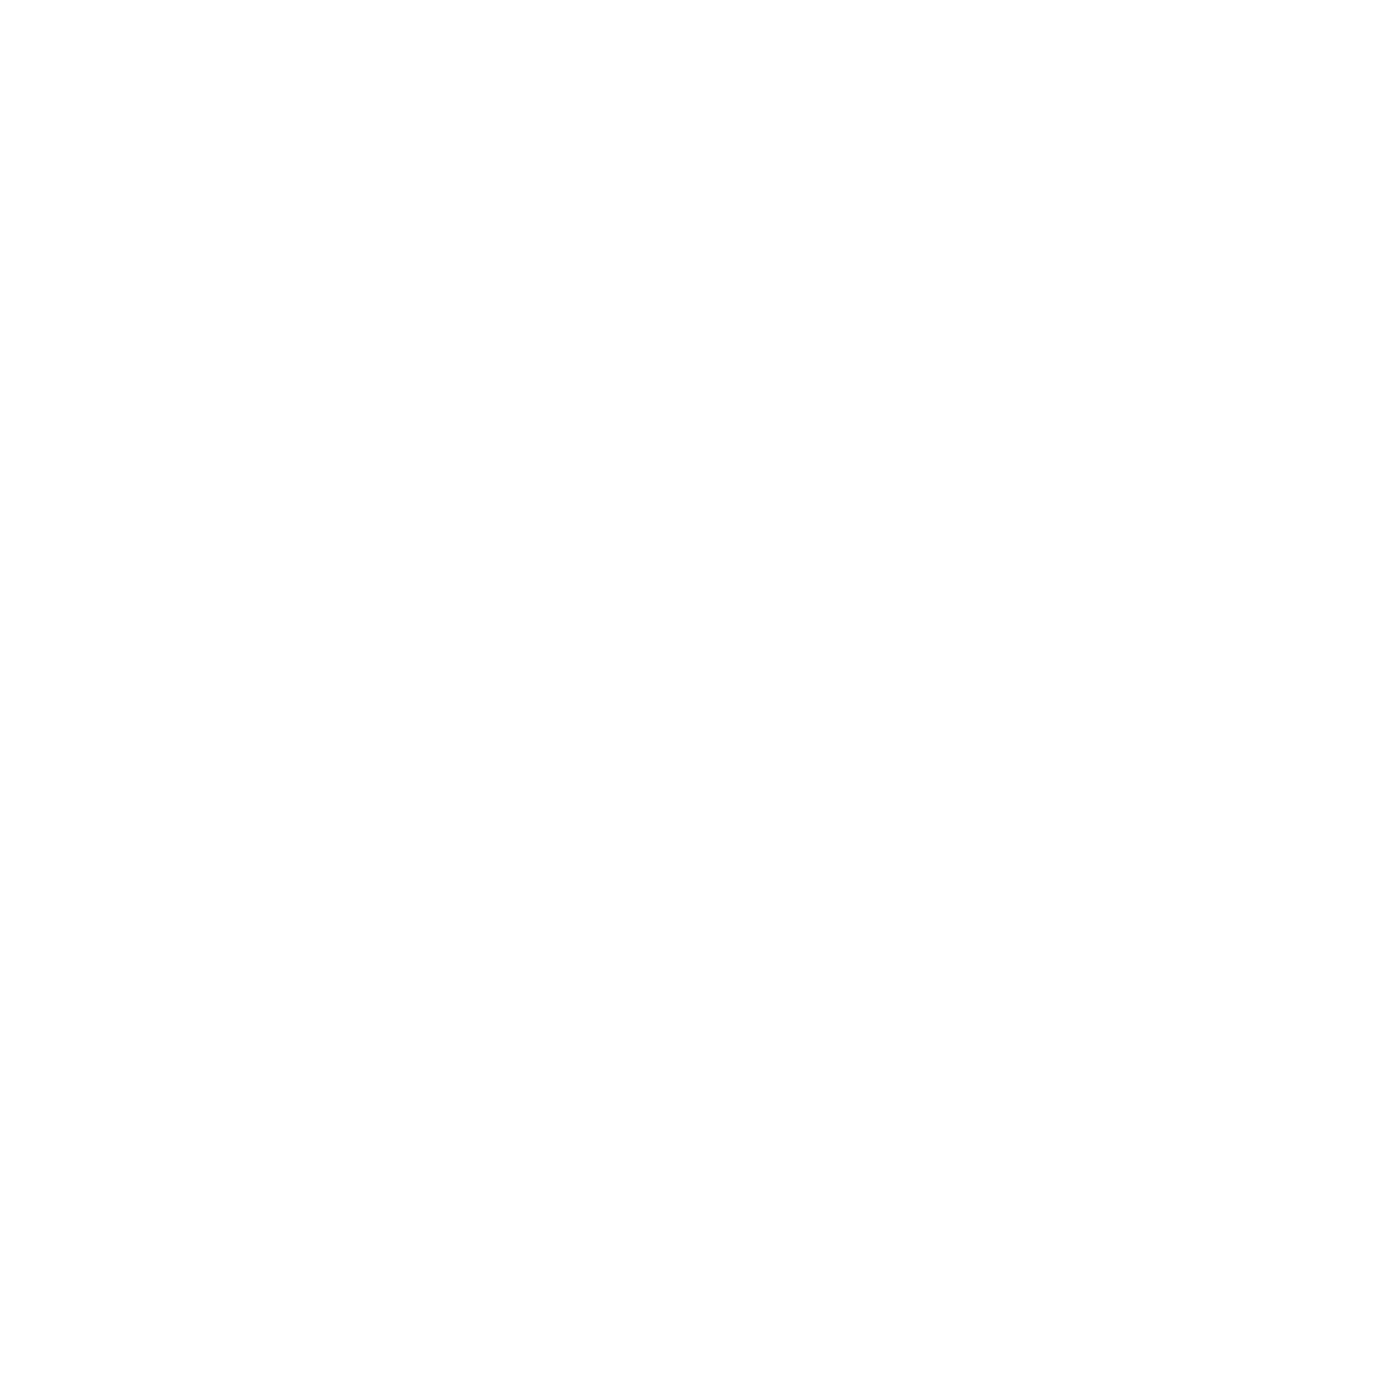 win123 - HacksawGaming